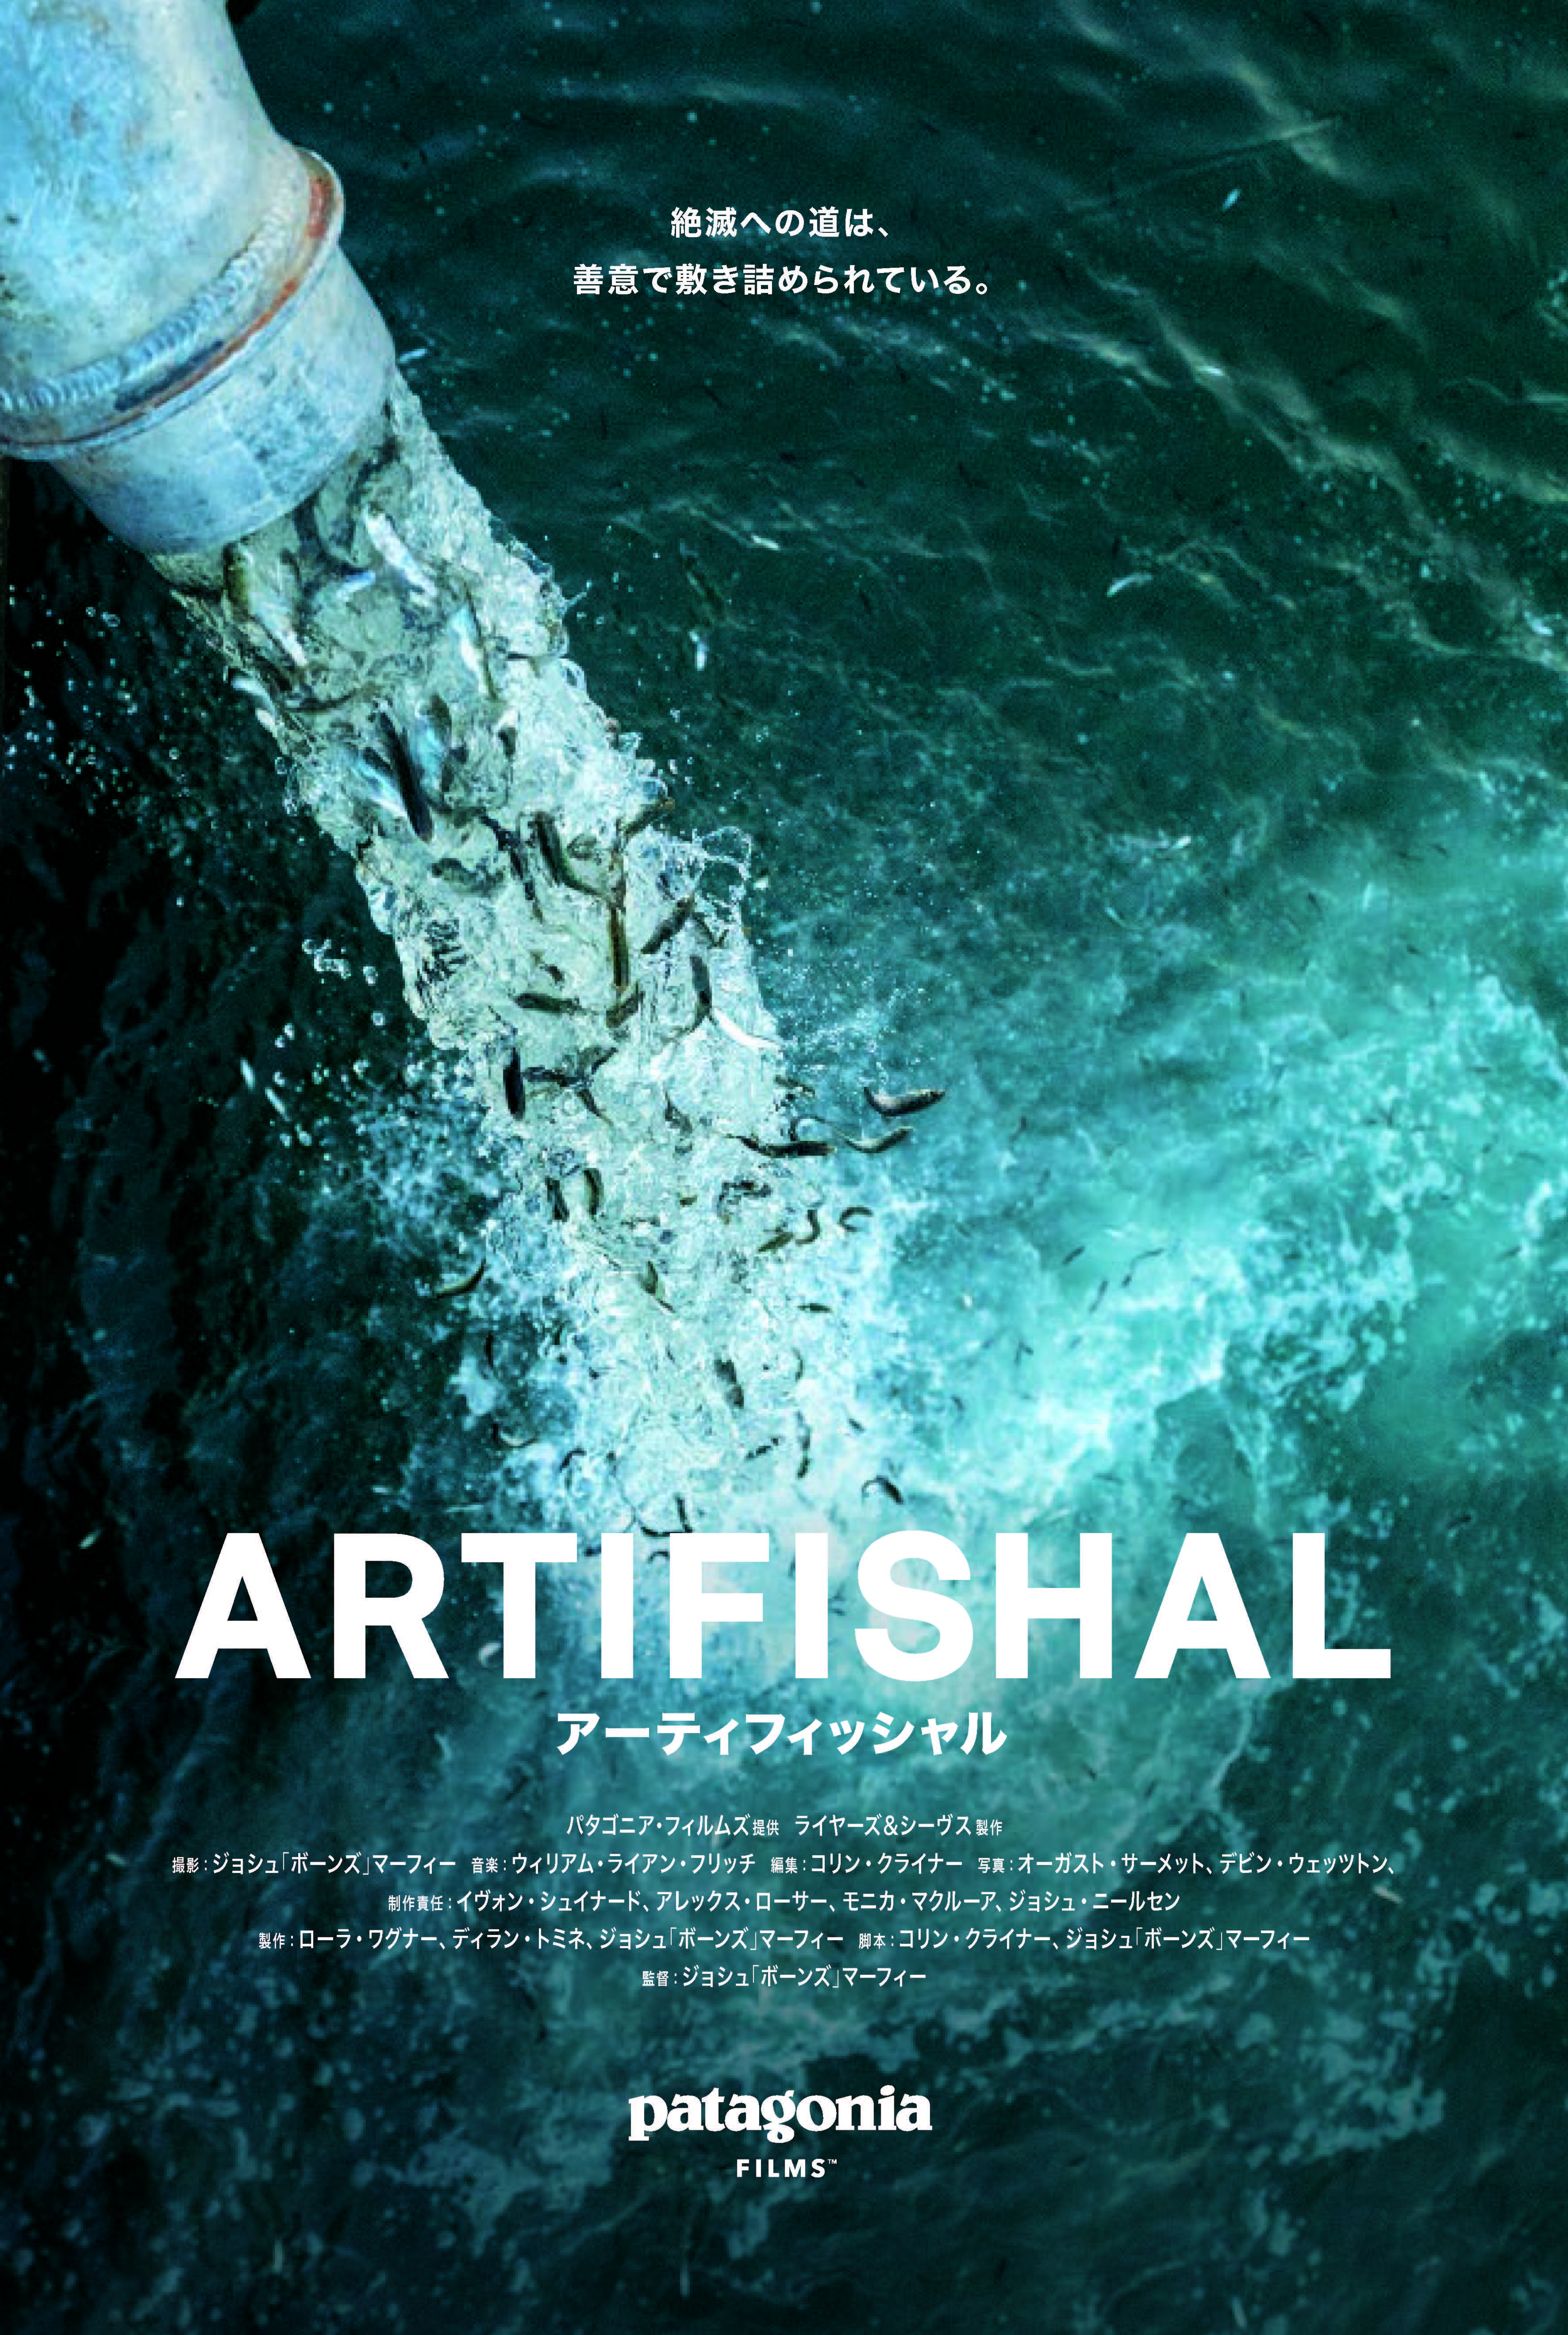 ドキュメンタリー映画 Artifishal アーティフィッシャル 9月8日 日 公開 パタゴニア日本支社のプレスリリース